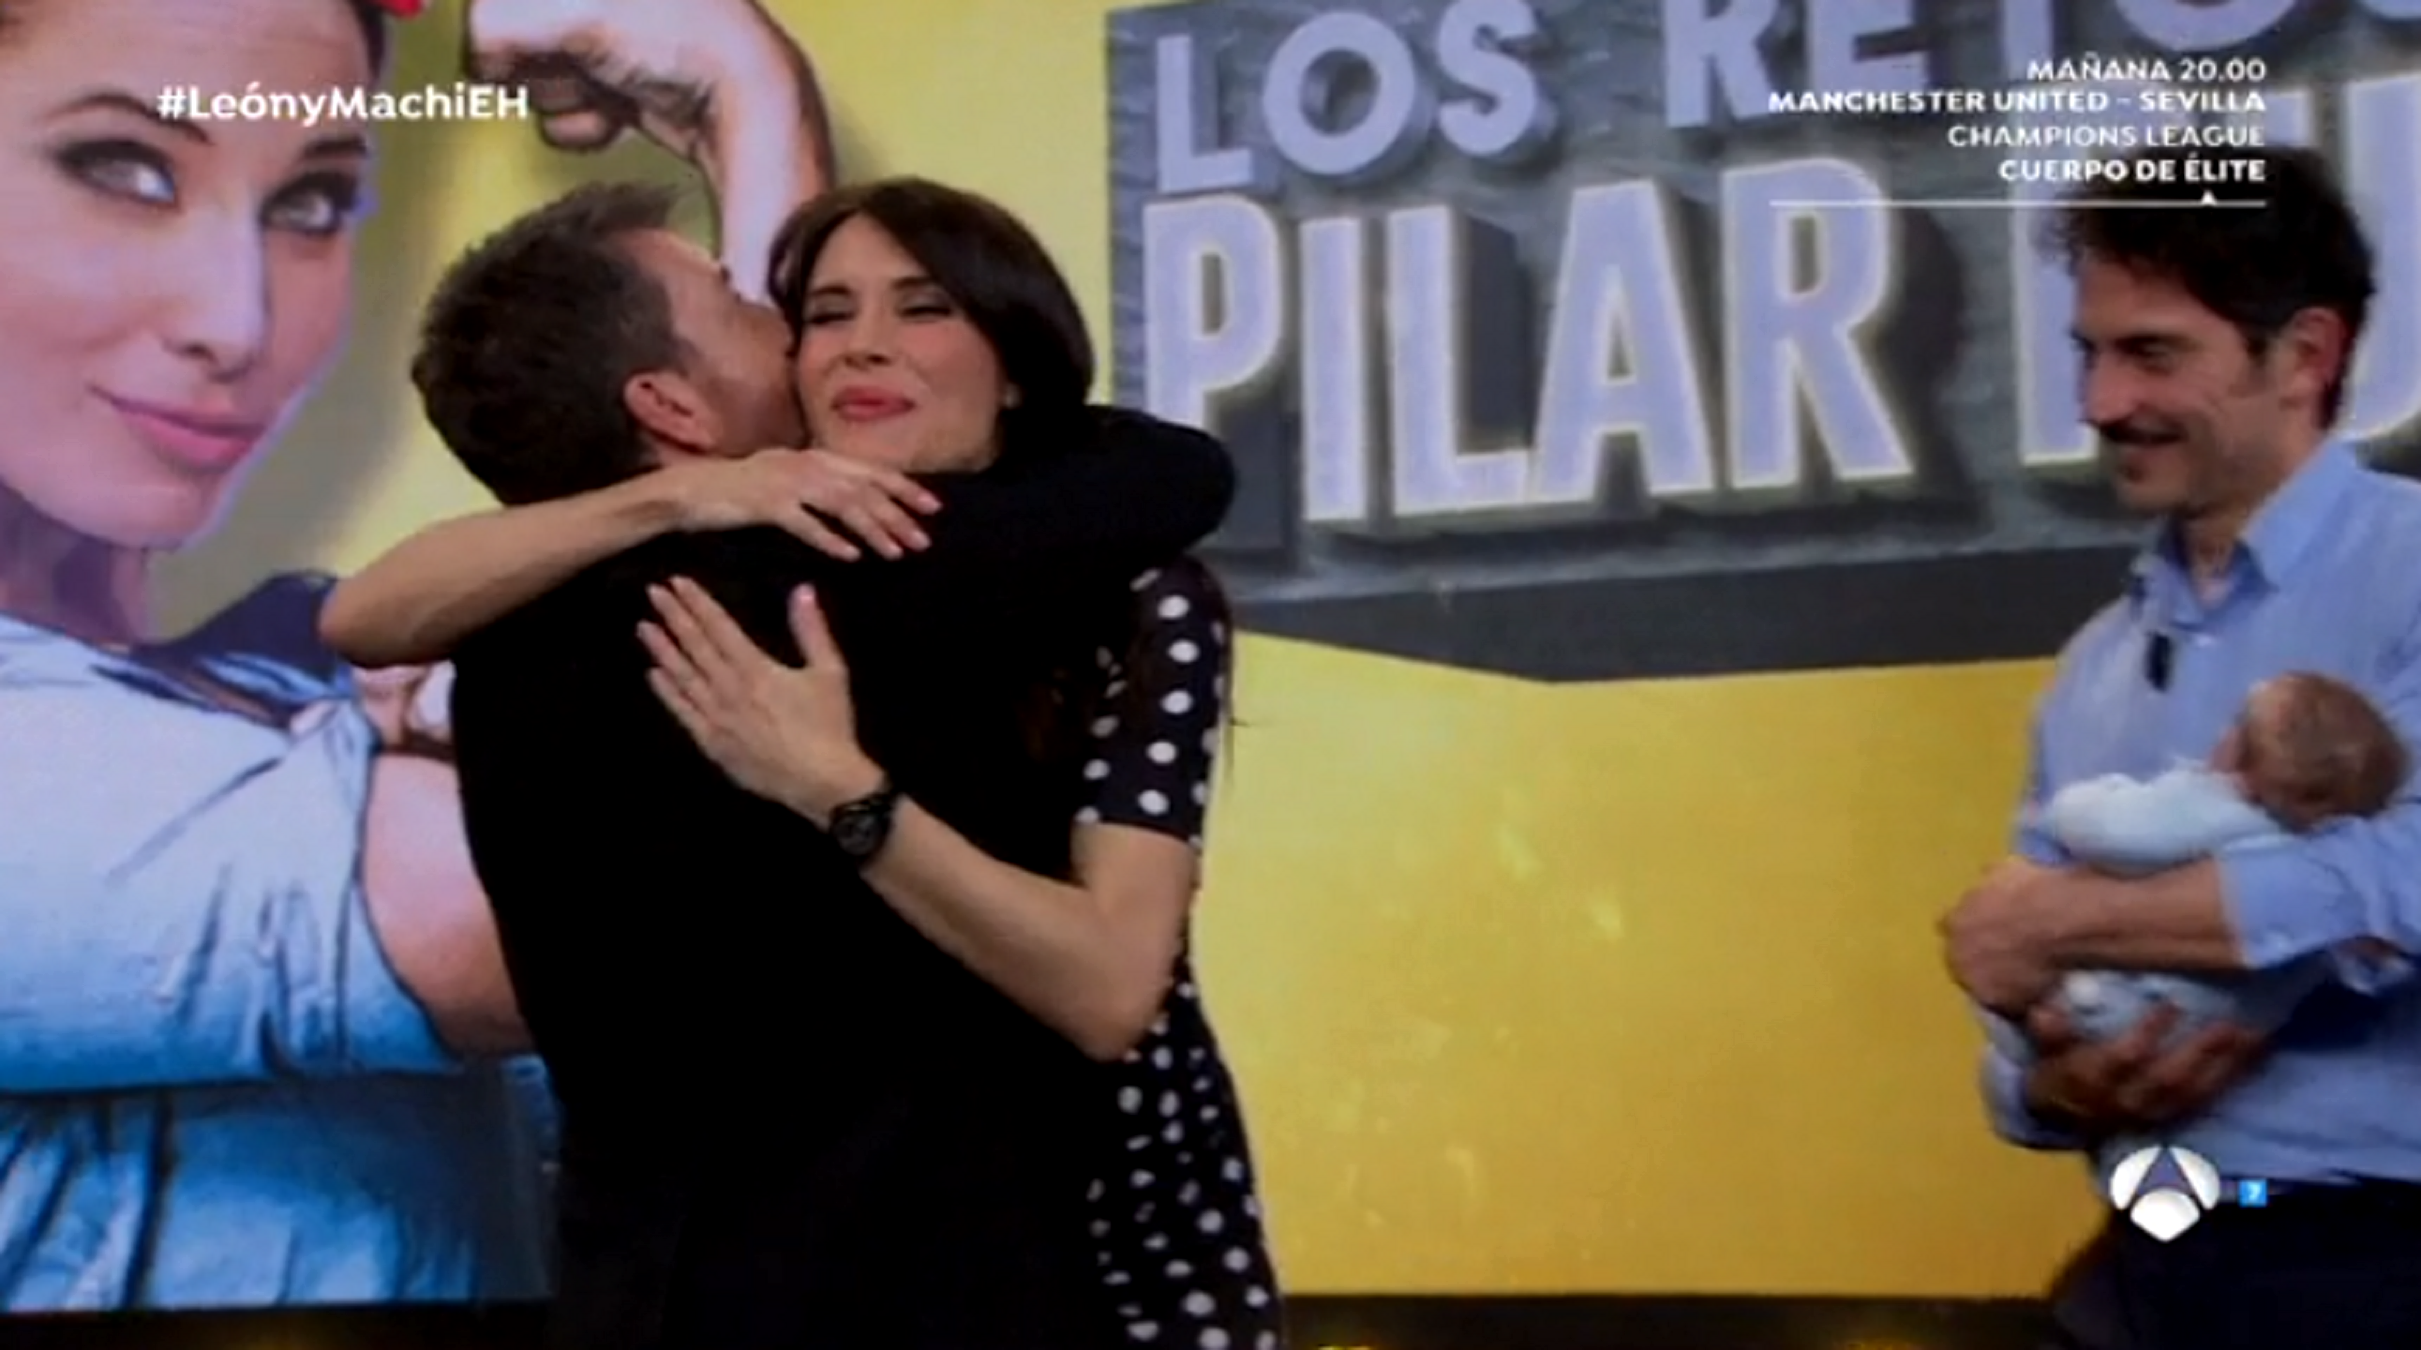 Pilar Rubio s’acomiada d’El Hormiguero entre llàgrimes